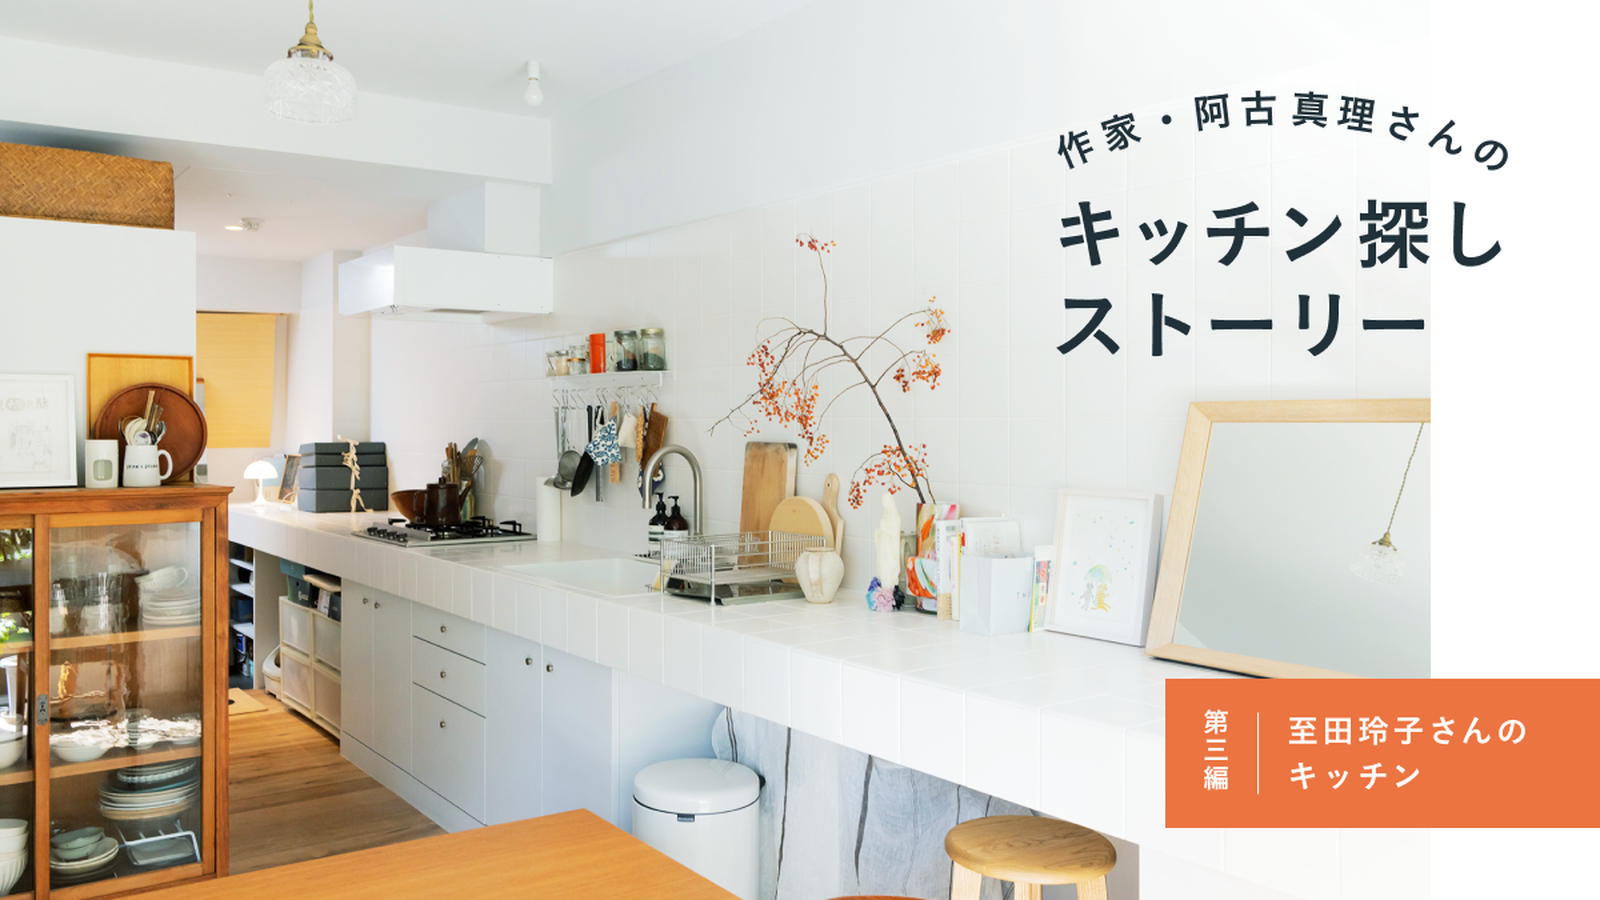 作家・阿古真理さんのキッチン探しストーリー　第三編「至田玲子さんのキッチン」